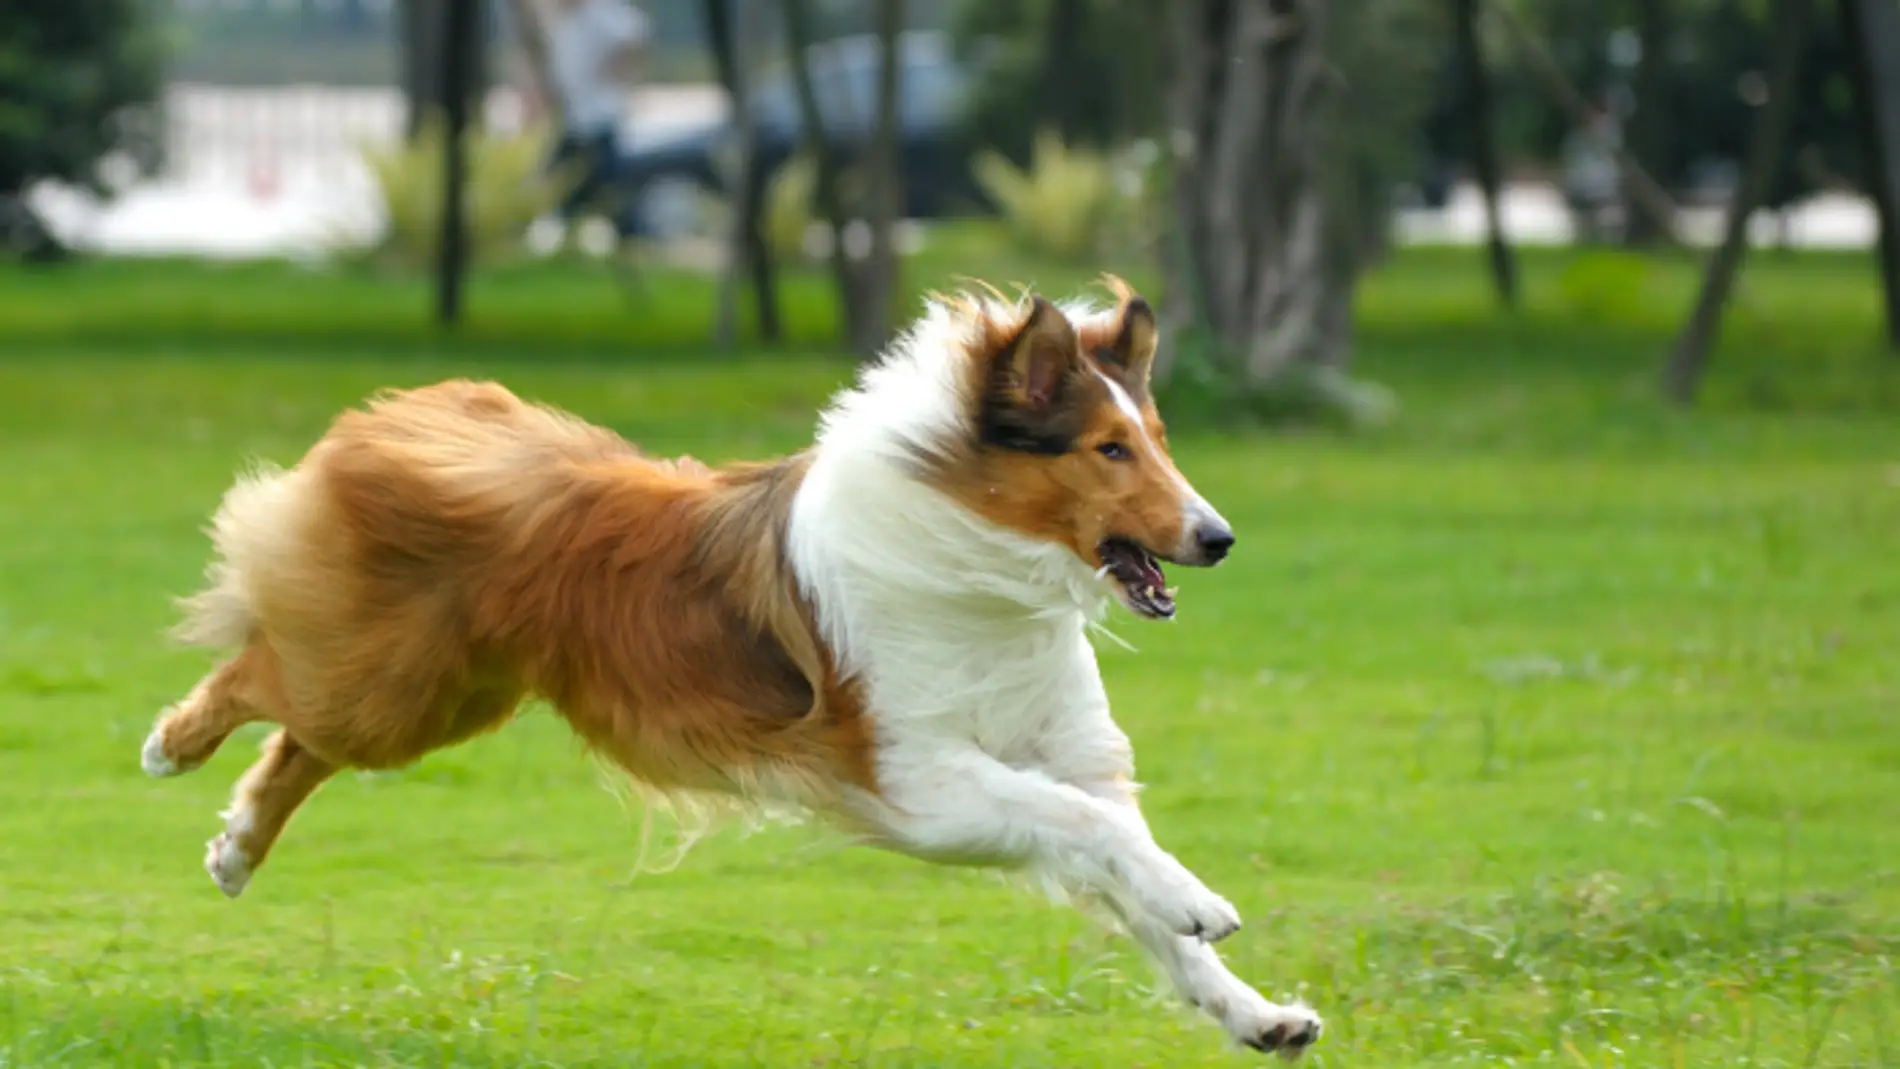 El Rough Collie sería la raza de perro que más agresividad puede desarrollar según el estudio